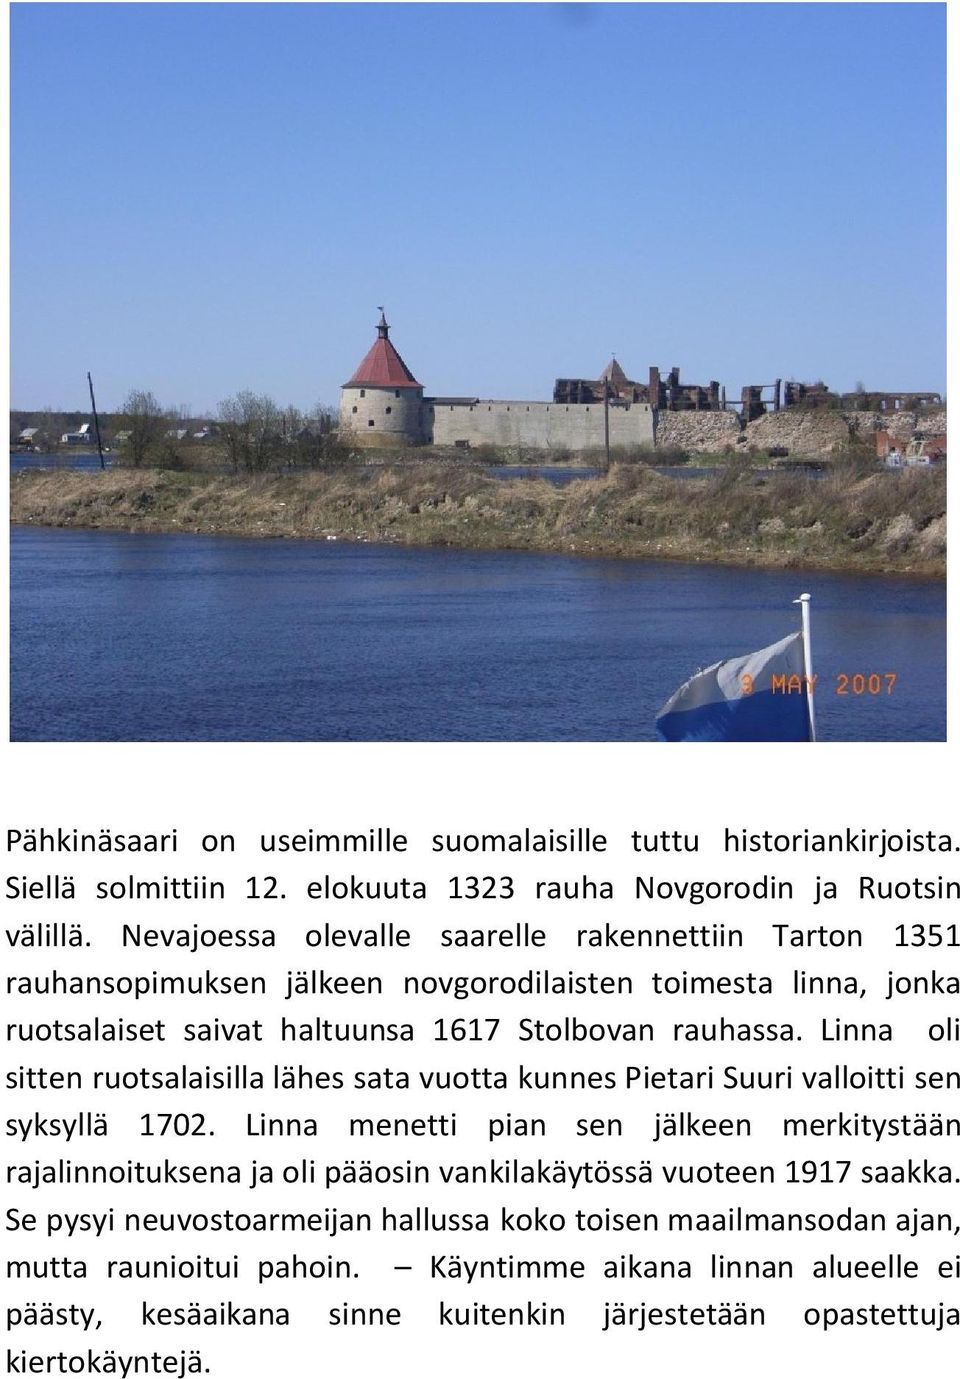 Linna oli sitten ruotsalaisilla lähes sata vuotta kunnes Pietari Suuri valloitti sen syksyllä 1702.